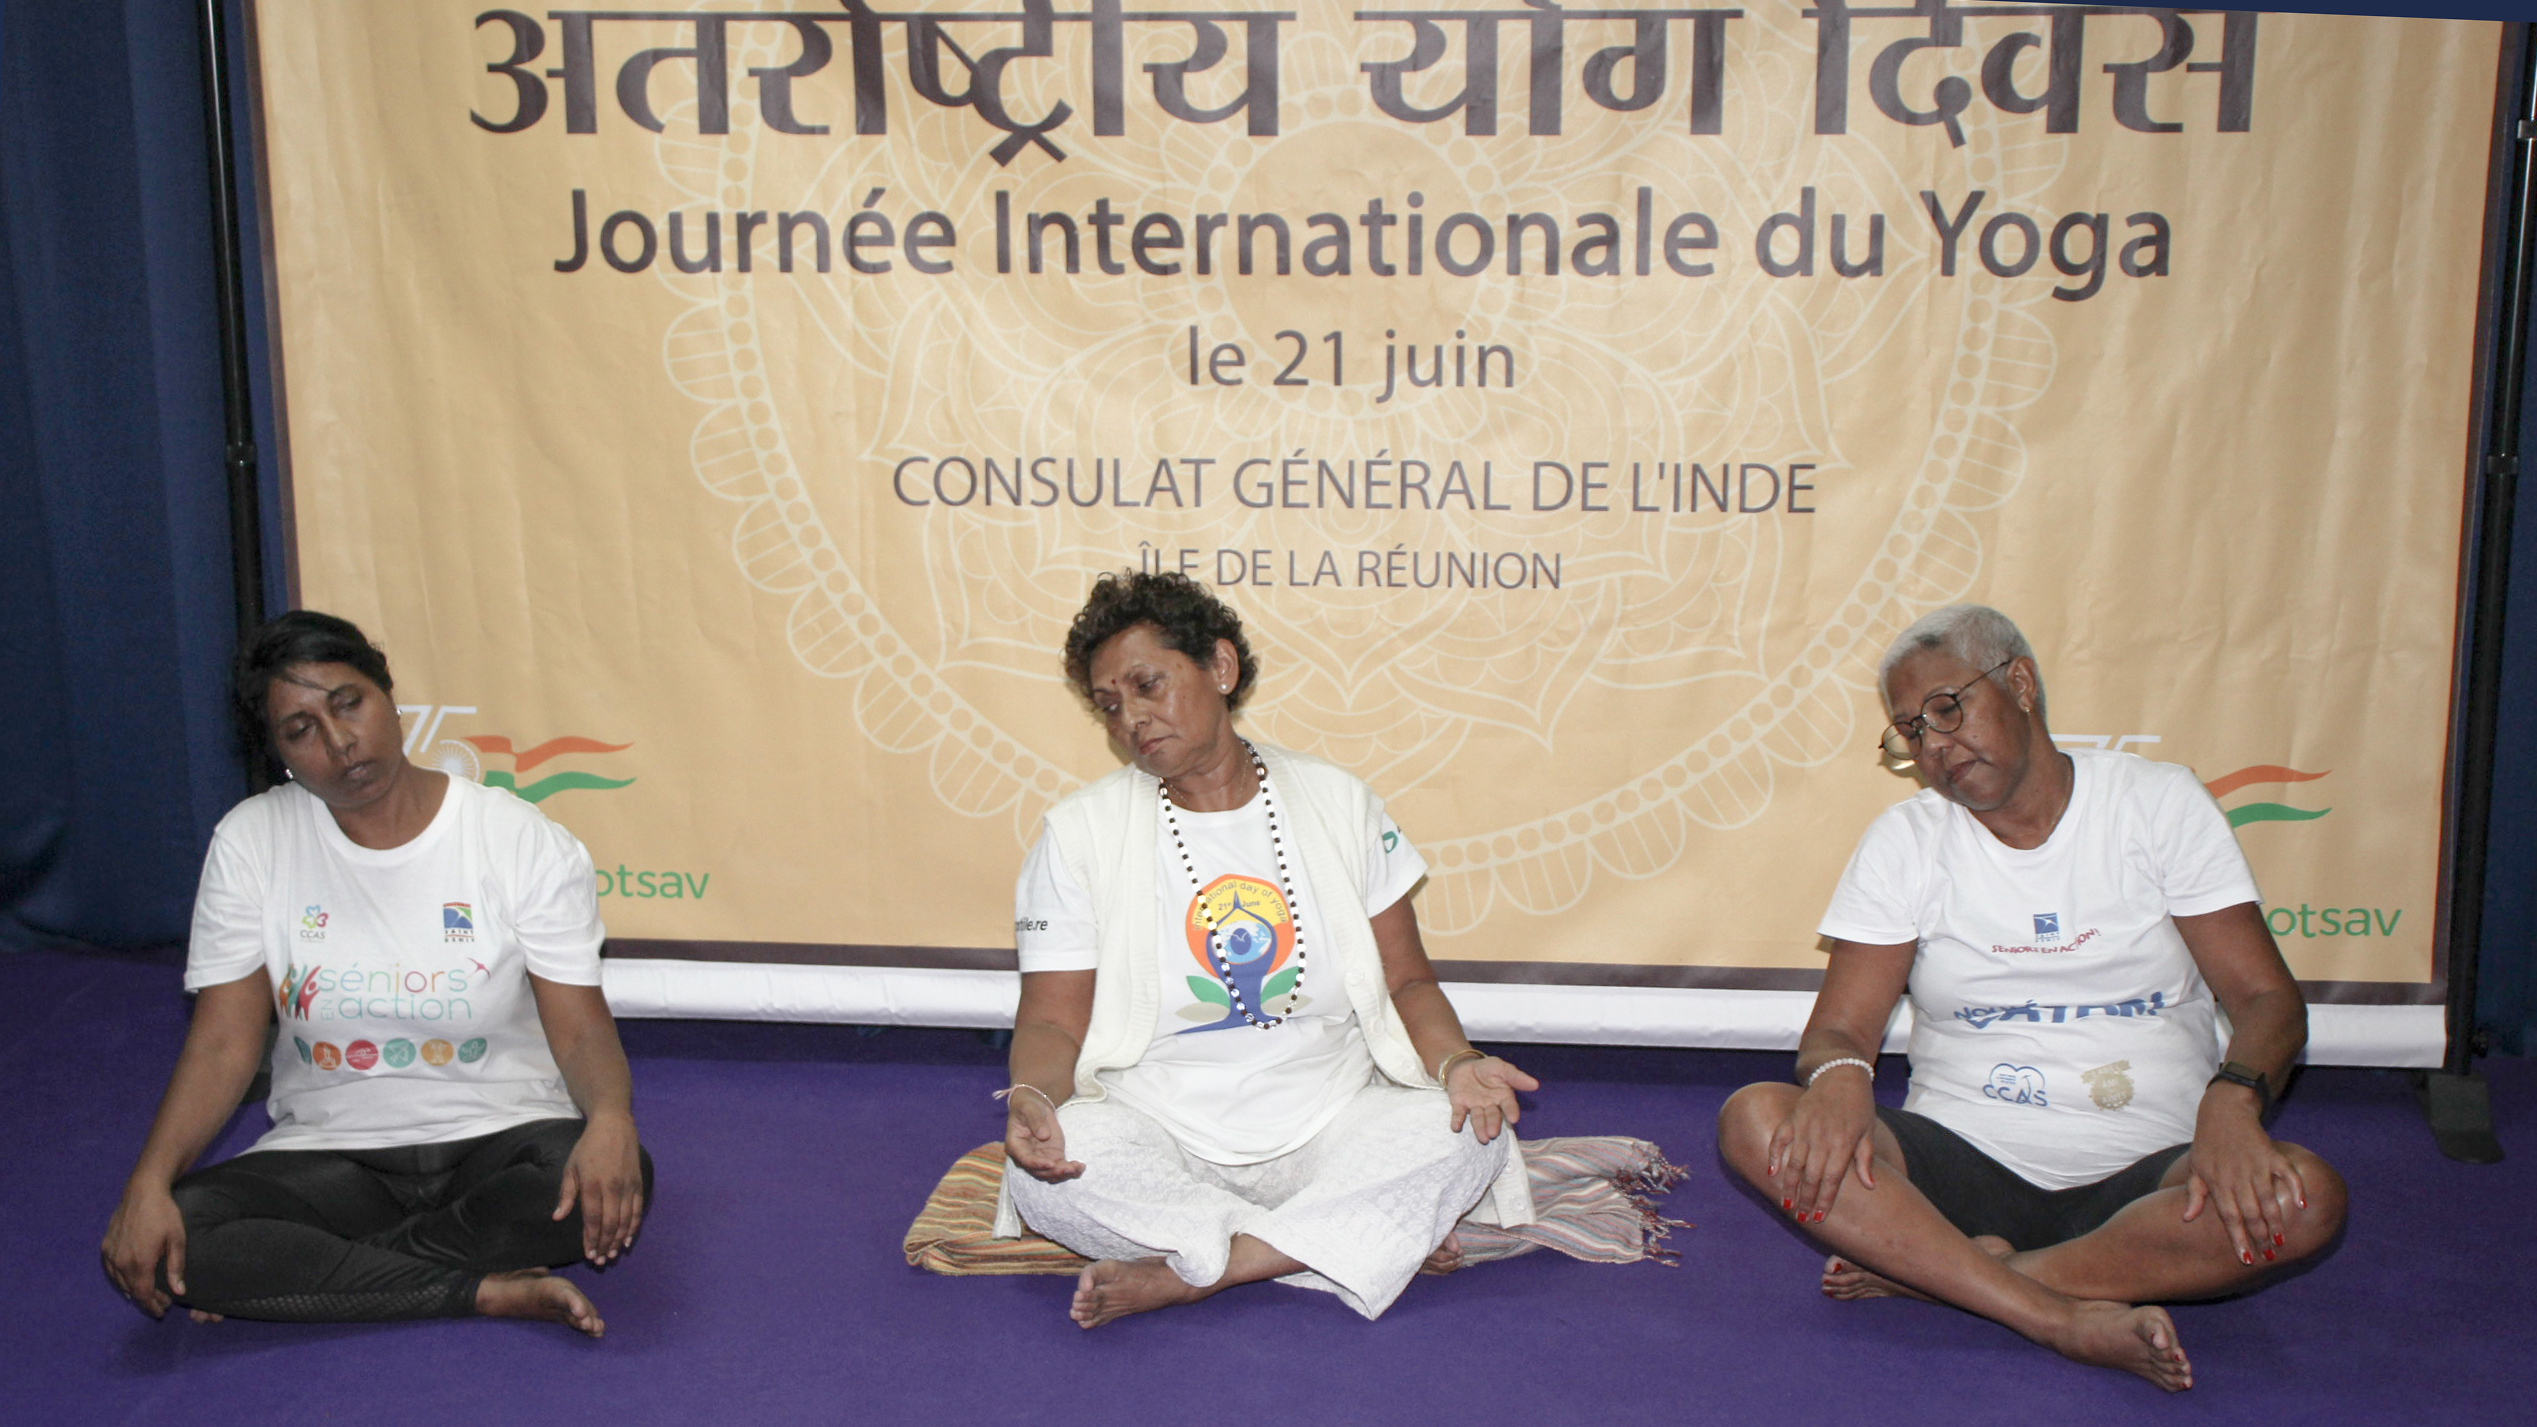 Journée Internationale du Yoga ce 21 juin